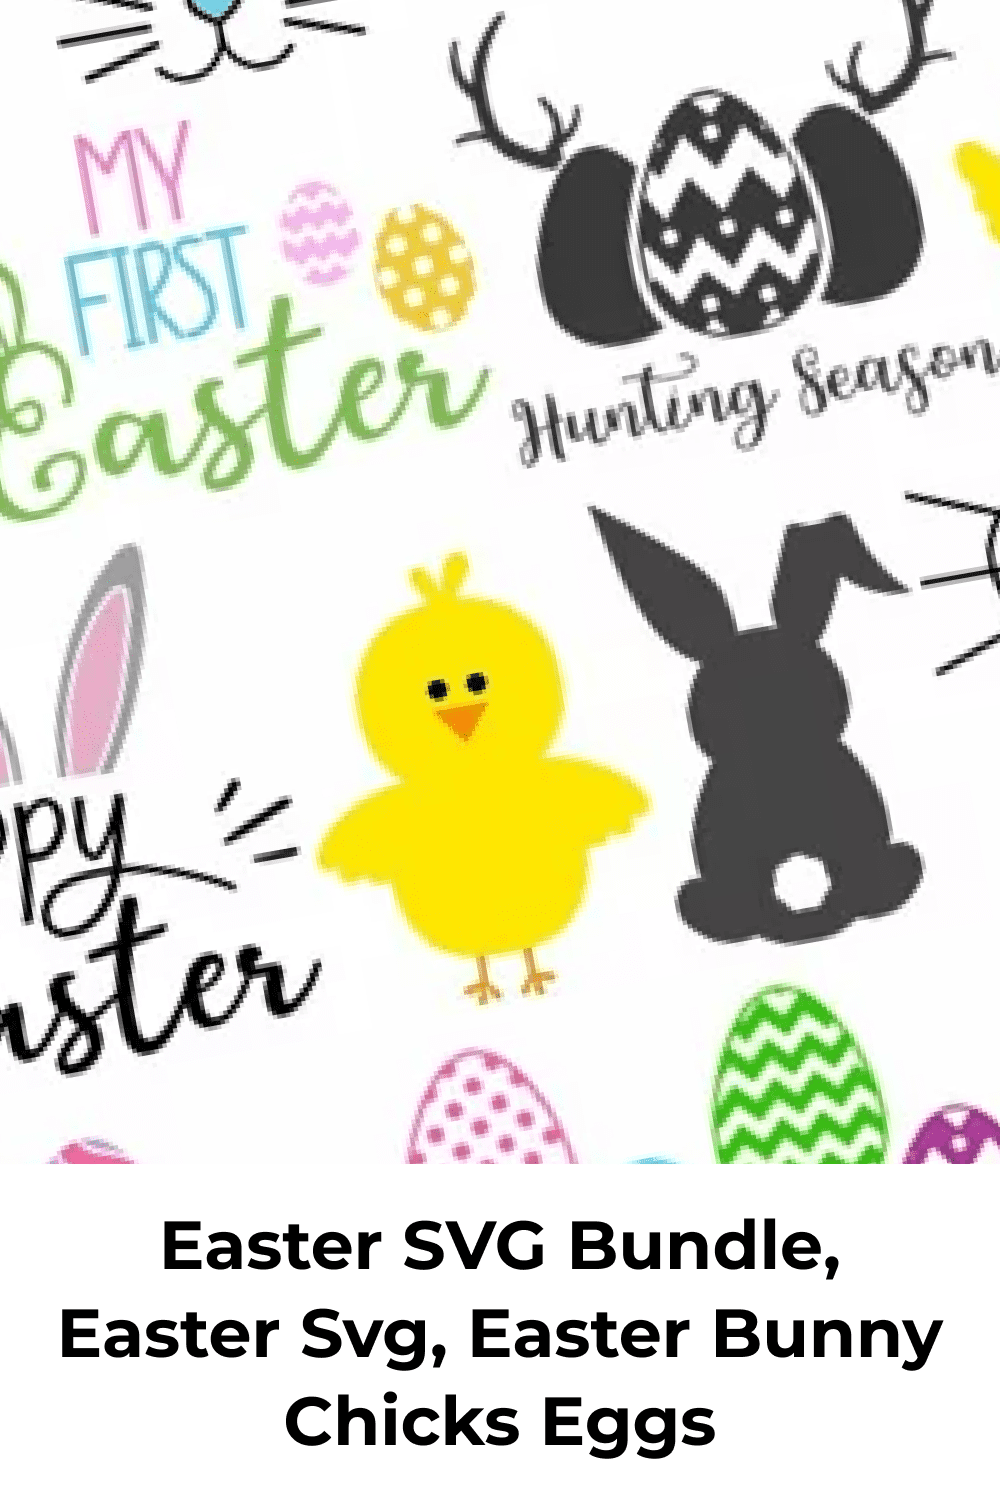 Easter SVG Bundle, Easter SVG, Waster Bunny Chicks Eggs.